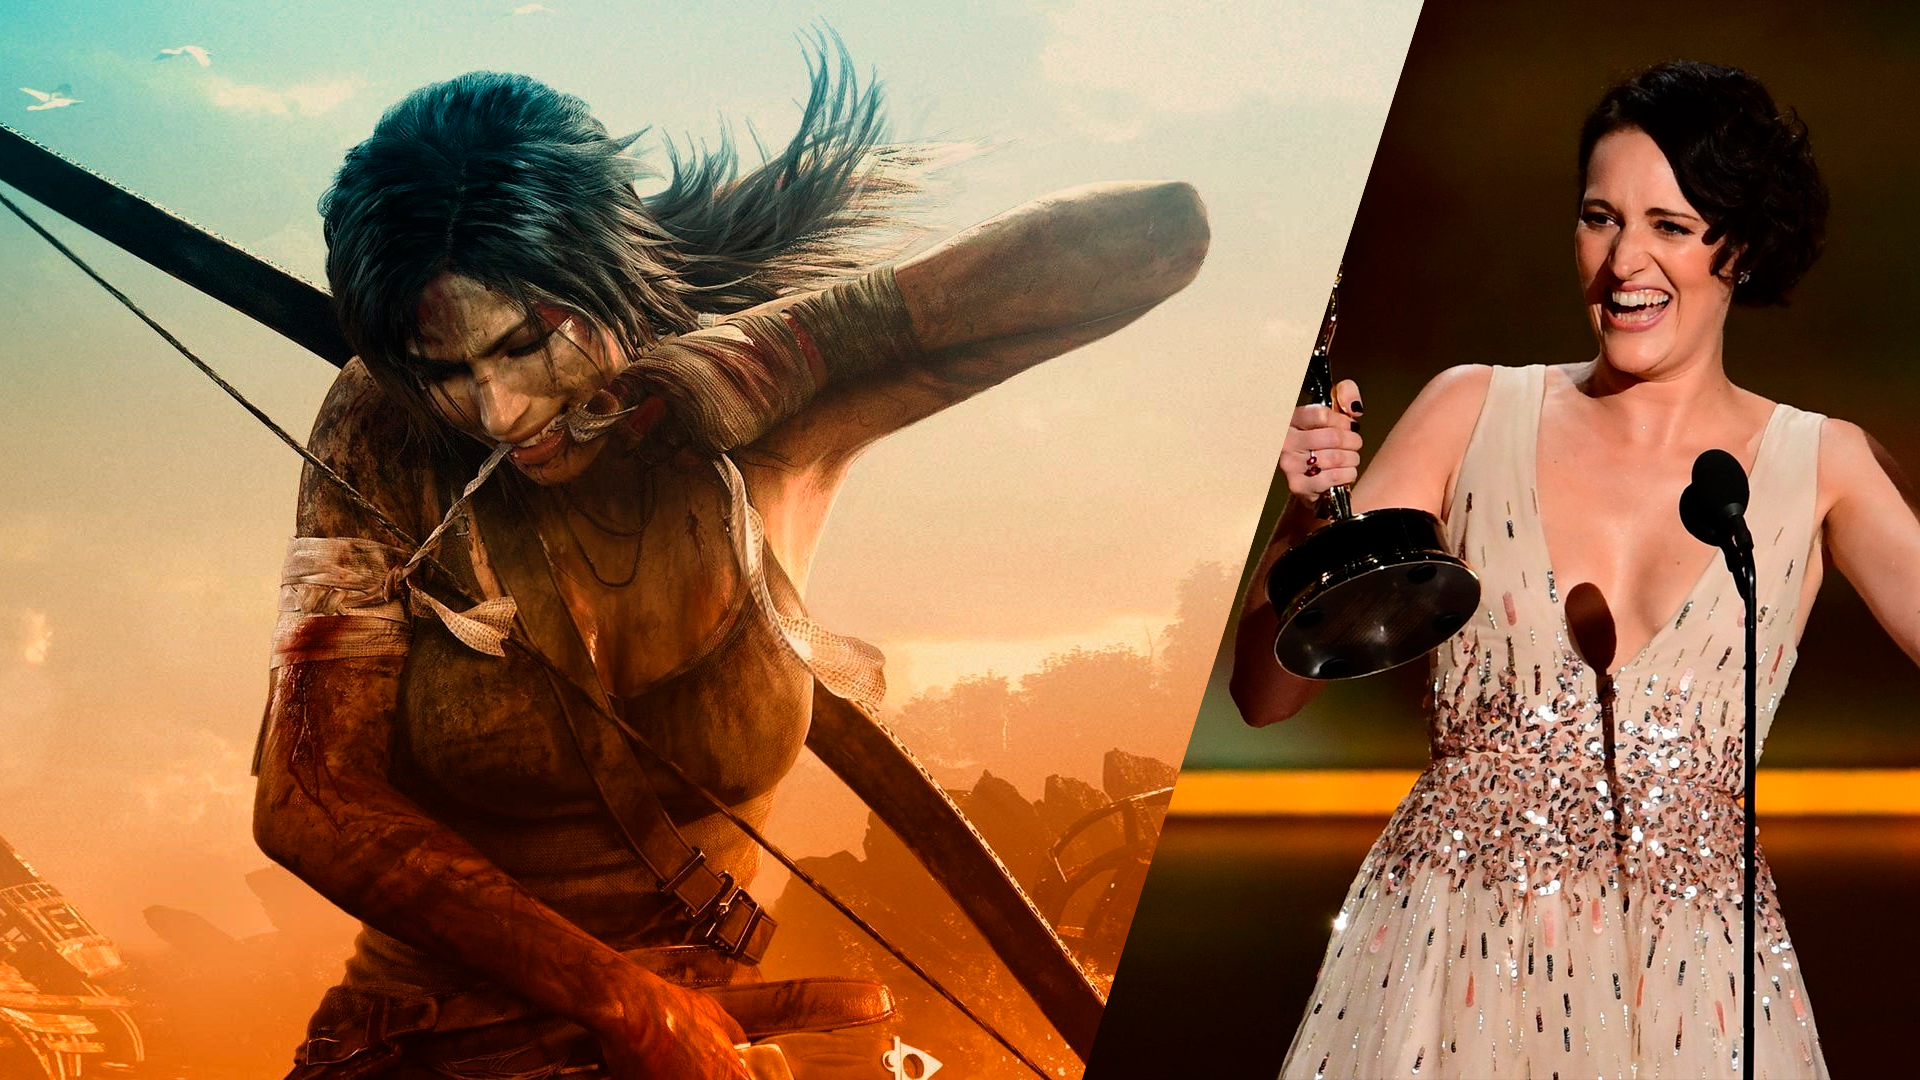 Cine Espetacular exibe o filme Lara Croft - Tomb Raider: A Origem da Vida  - Área VIP